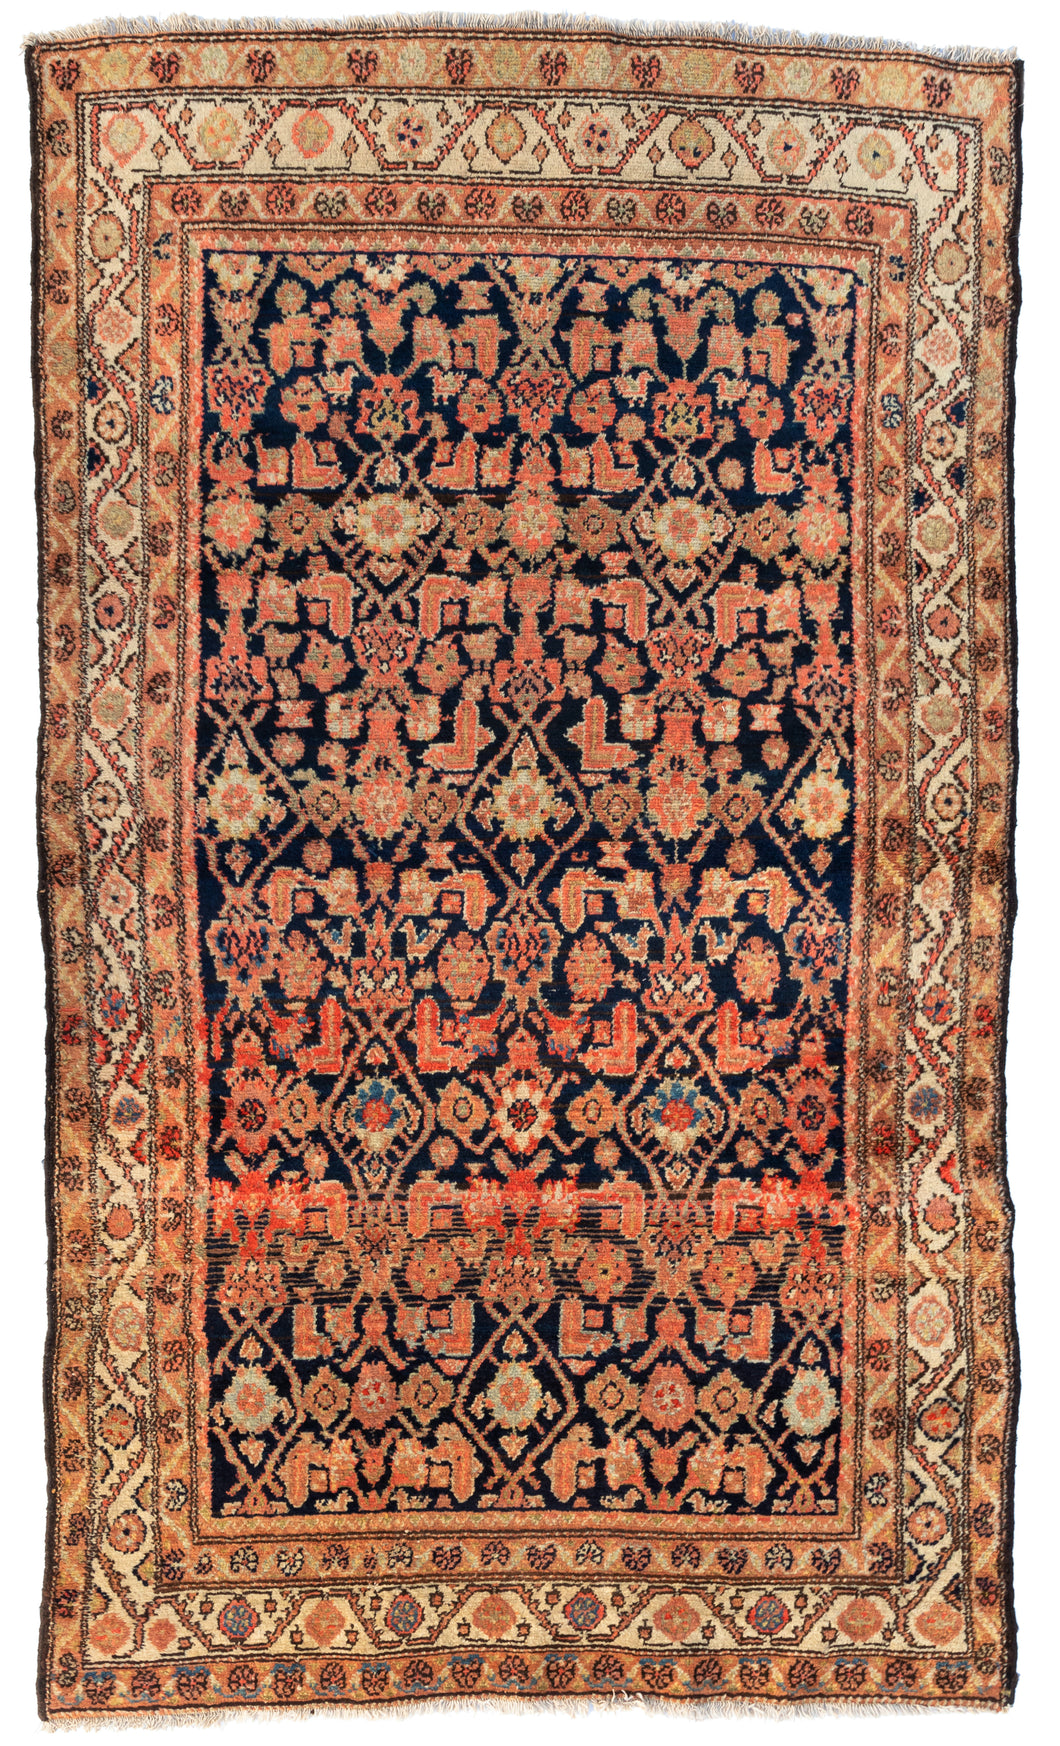 Antique Hamedan Carpet